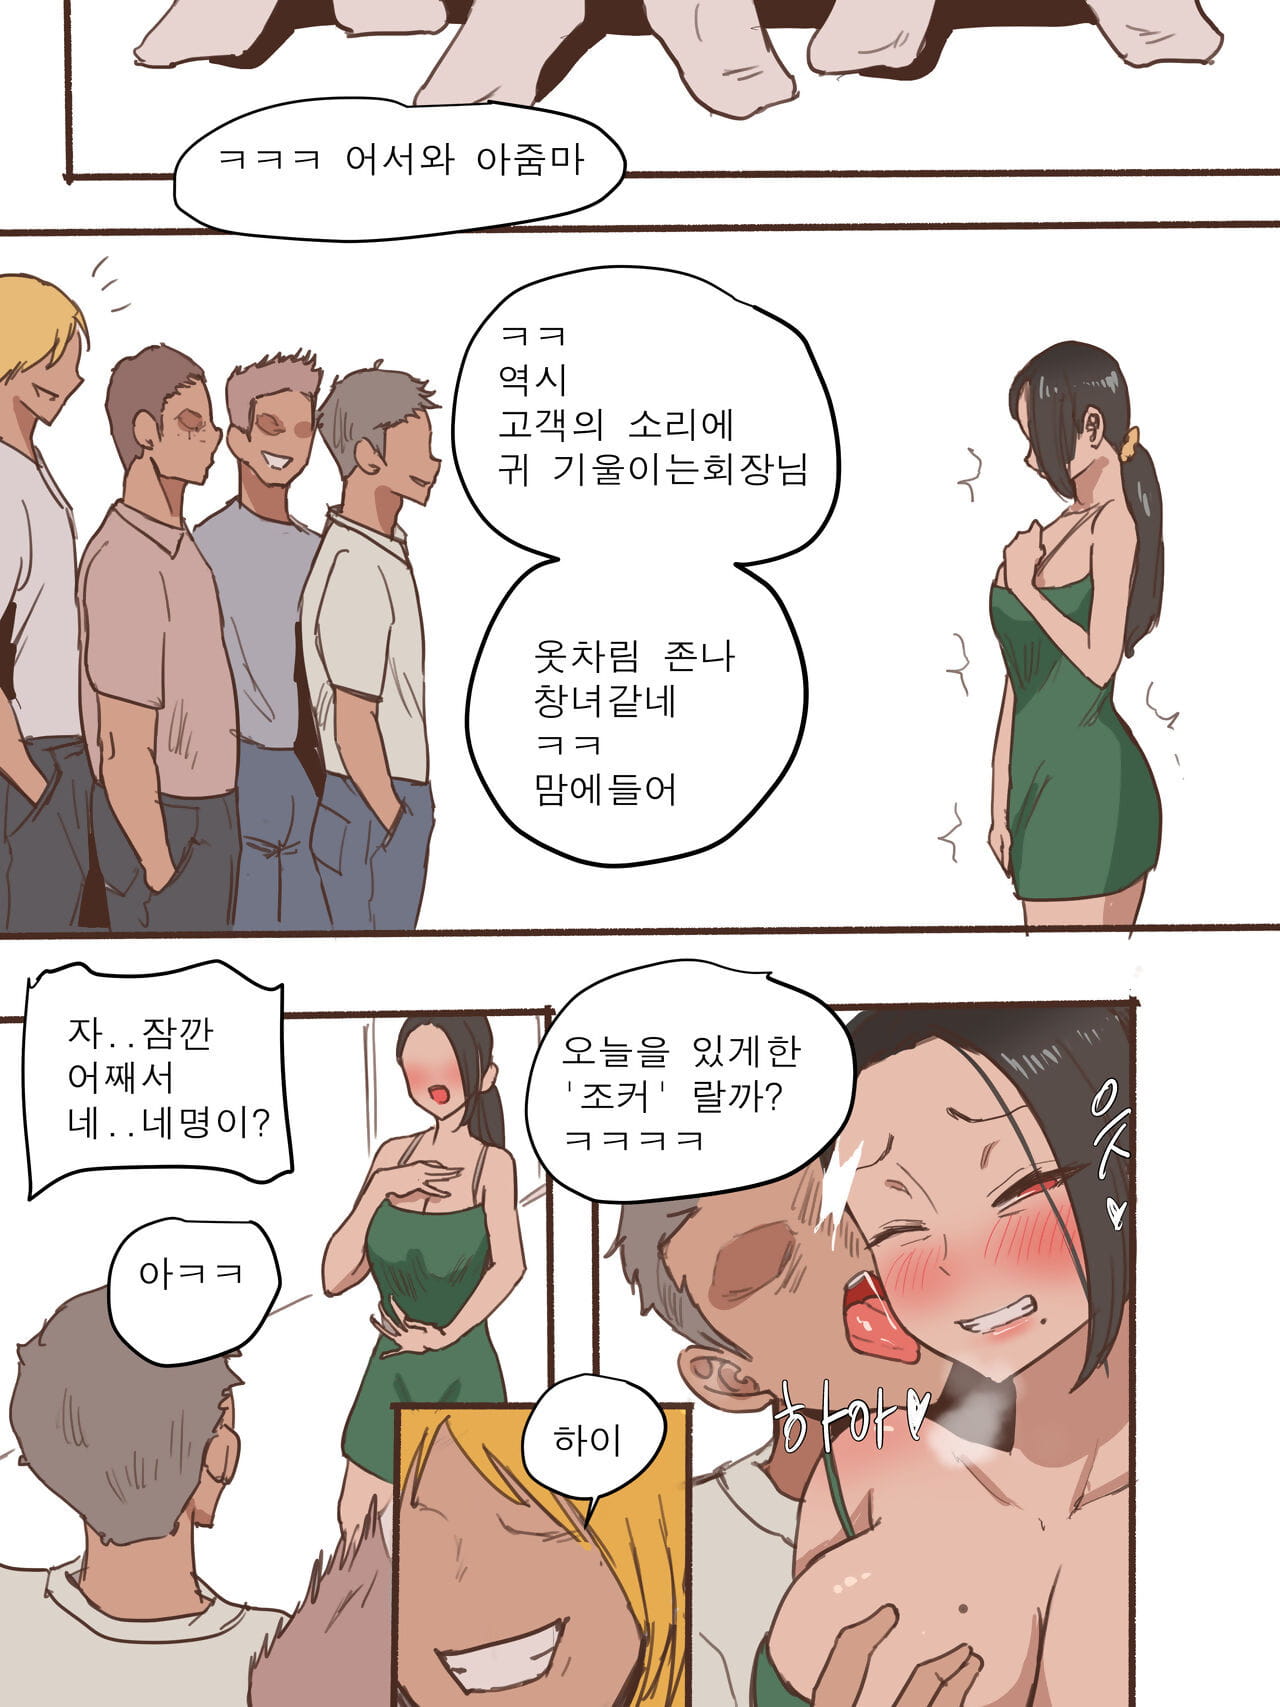 laliberte monstro + depois de Coreano parte 2